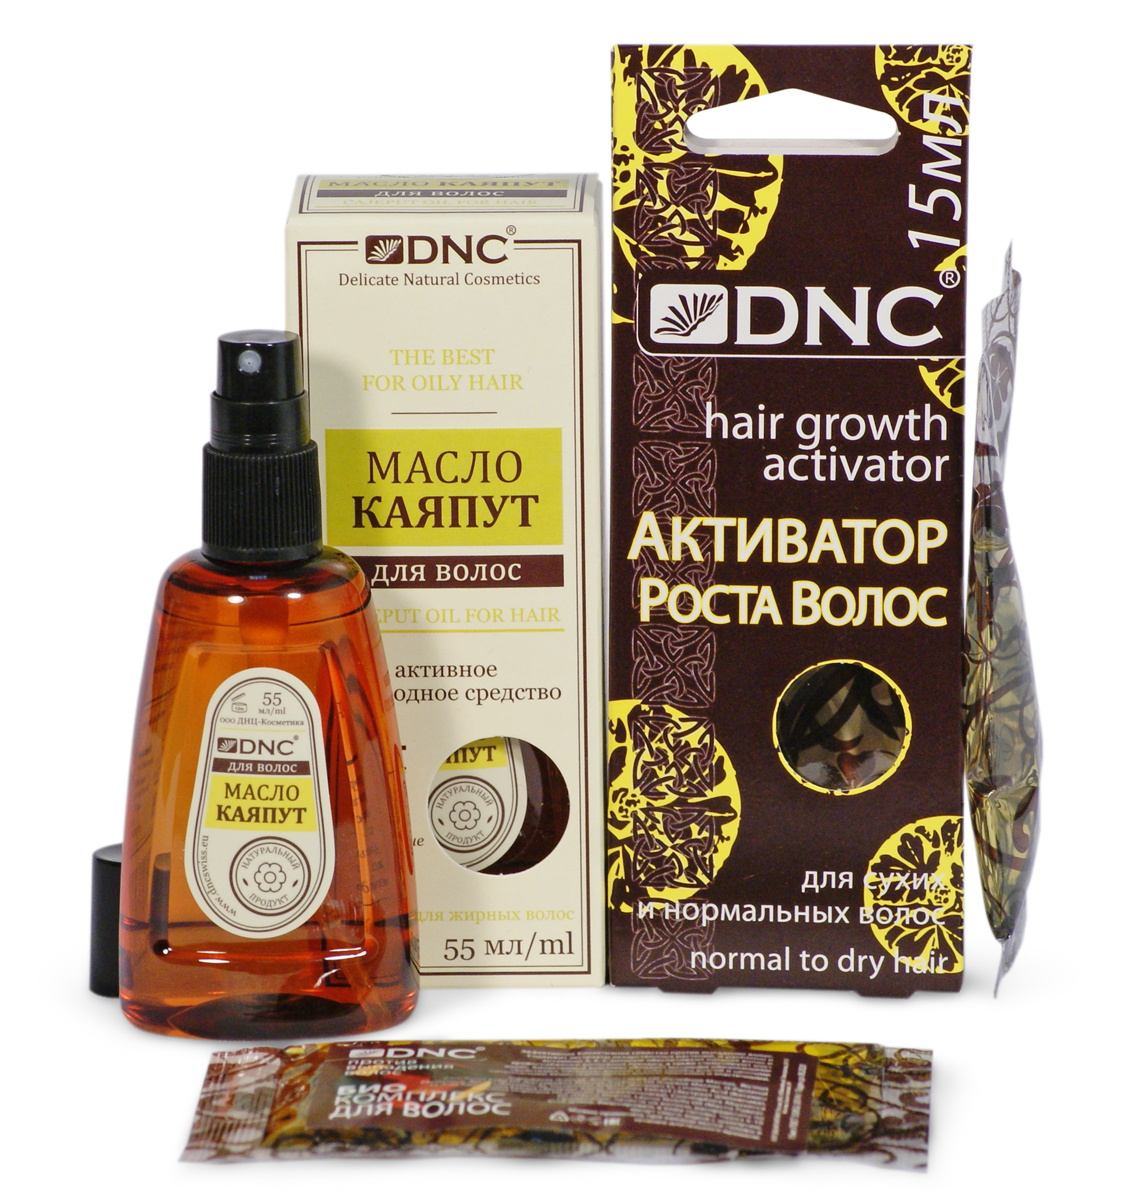 Что такое активатор роста волос dnc